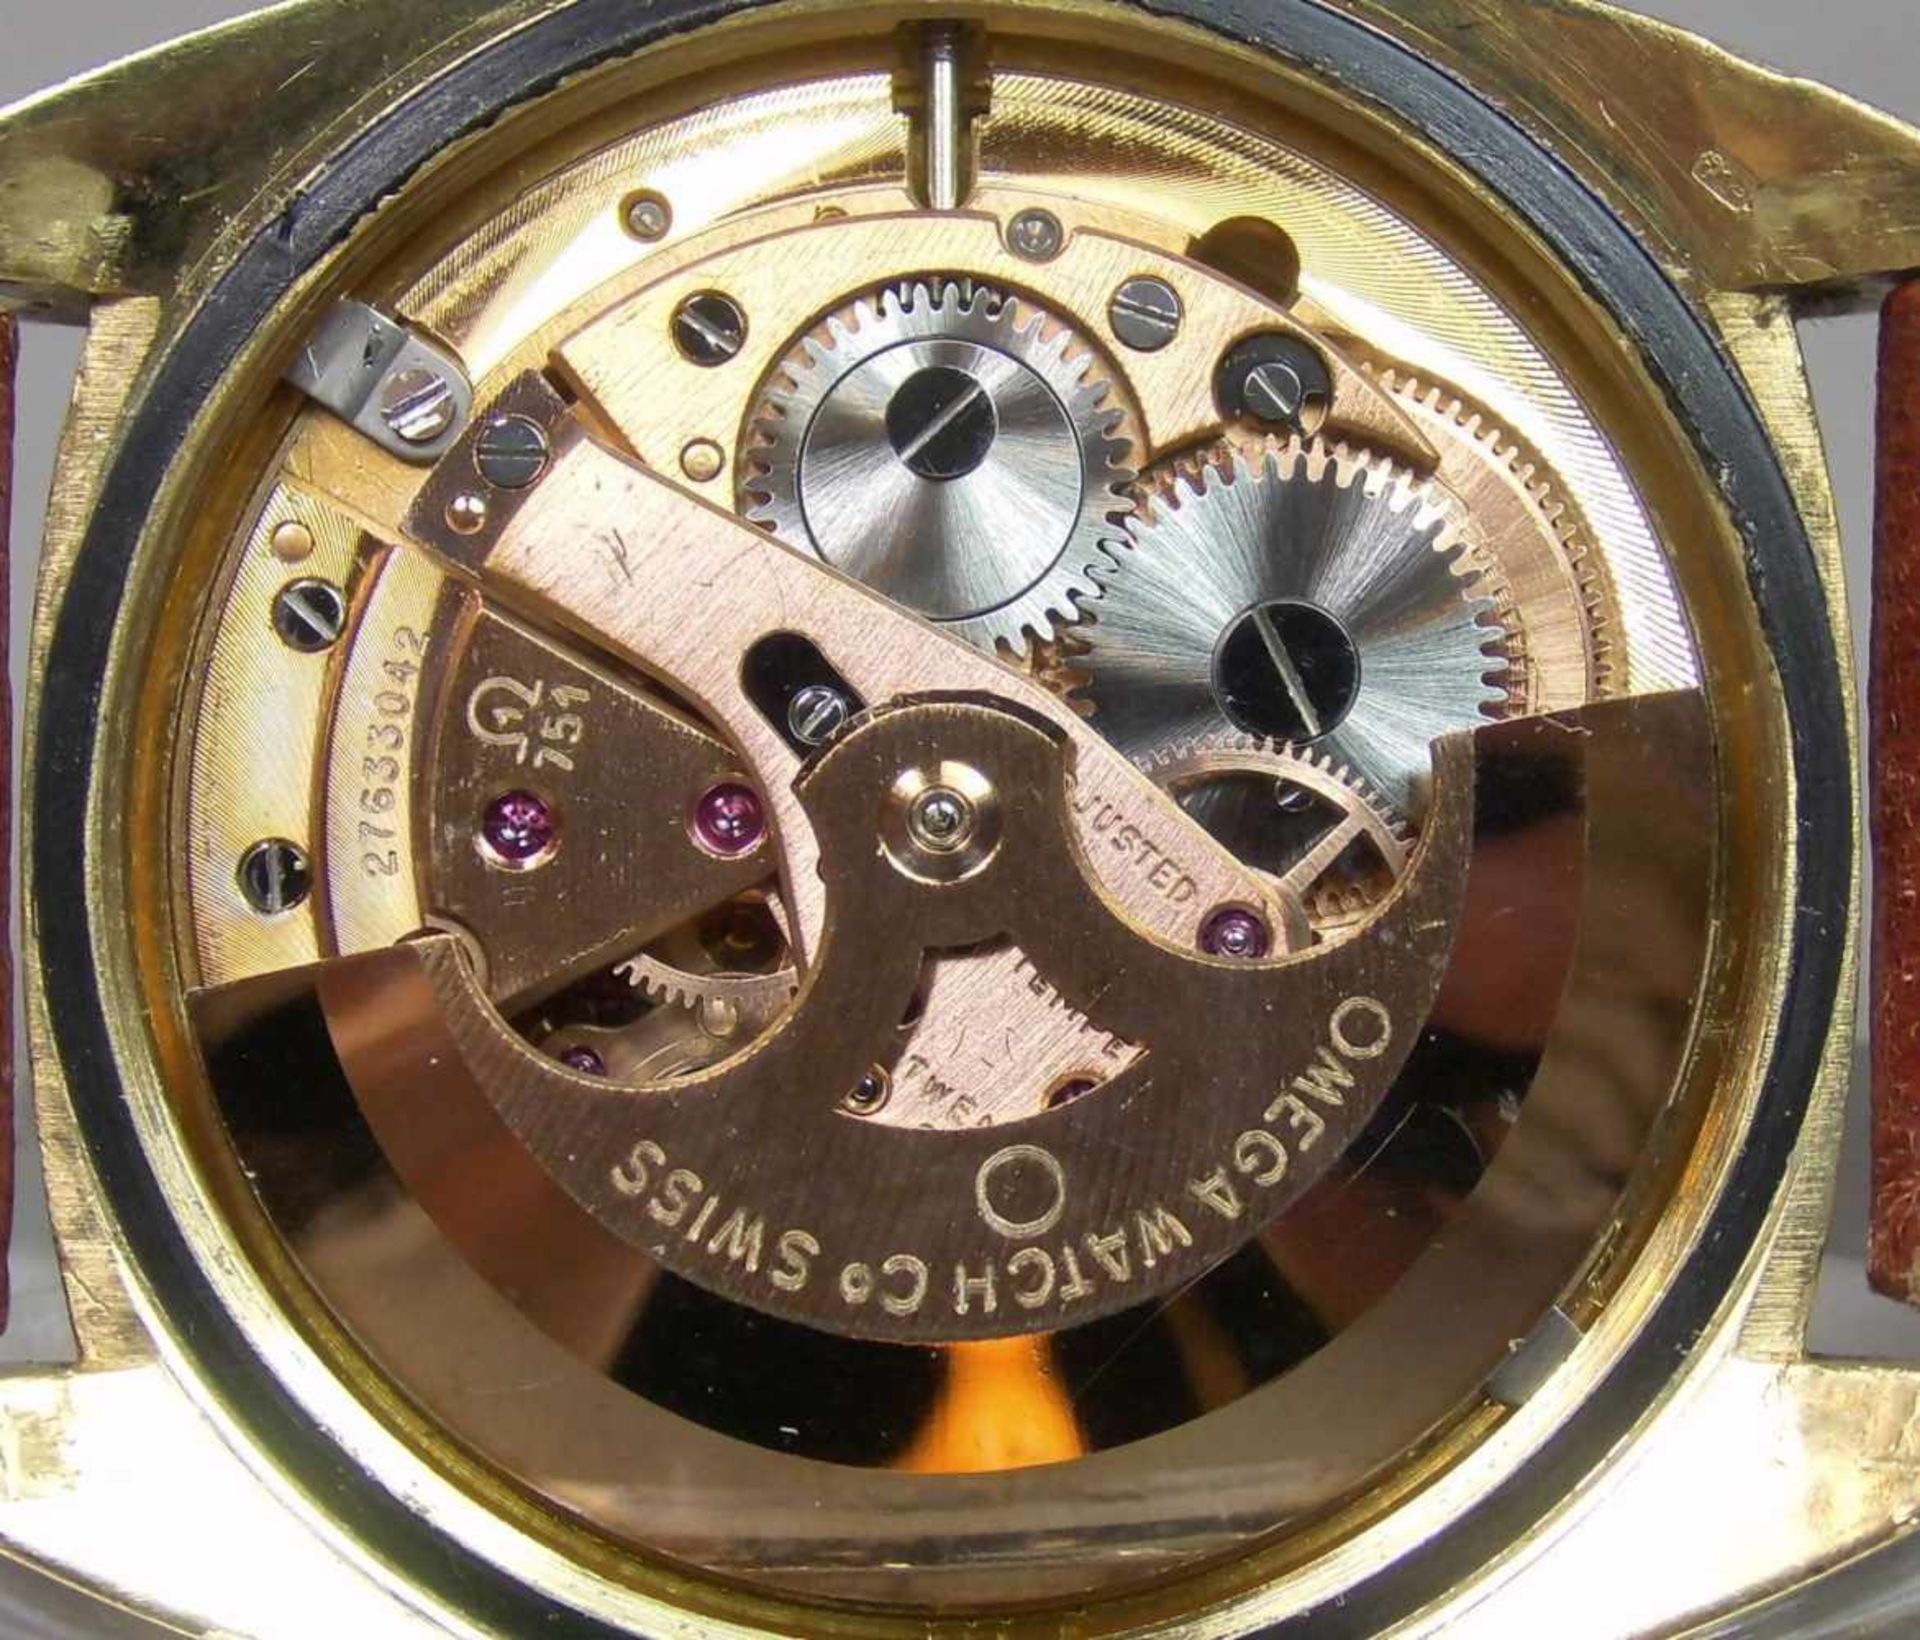 VINTAGE ARMBANDUHR: OMEGA CONSTELLATION / wristwatch, Herstellungsjahr 1968, Automatik-Uhr, - Image 10 of 11